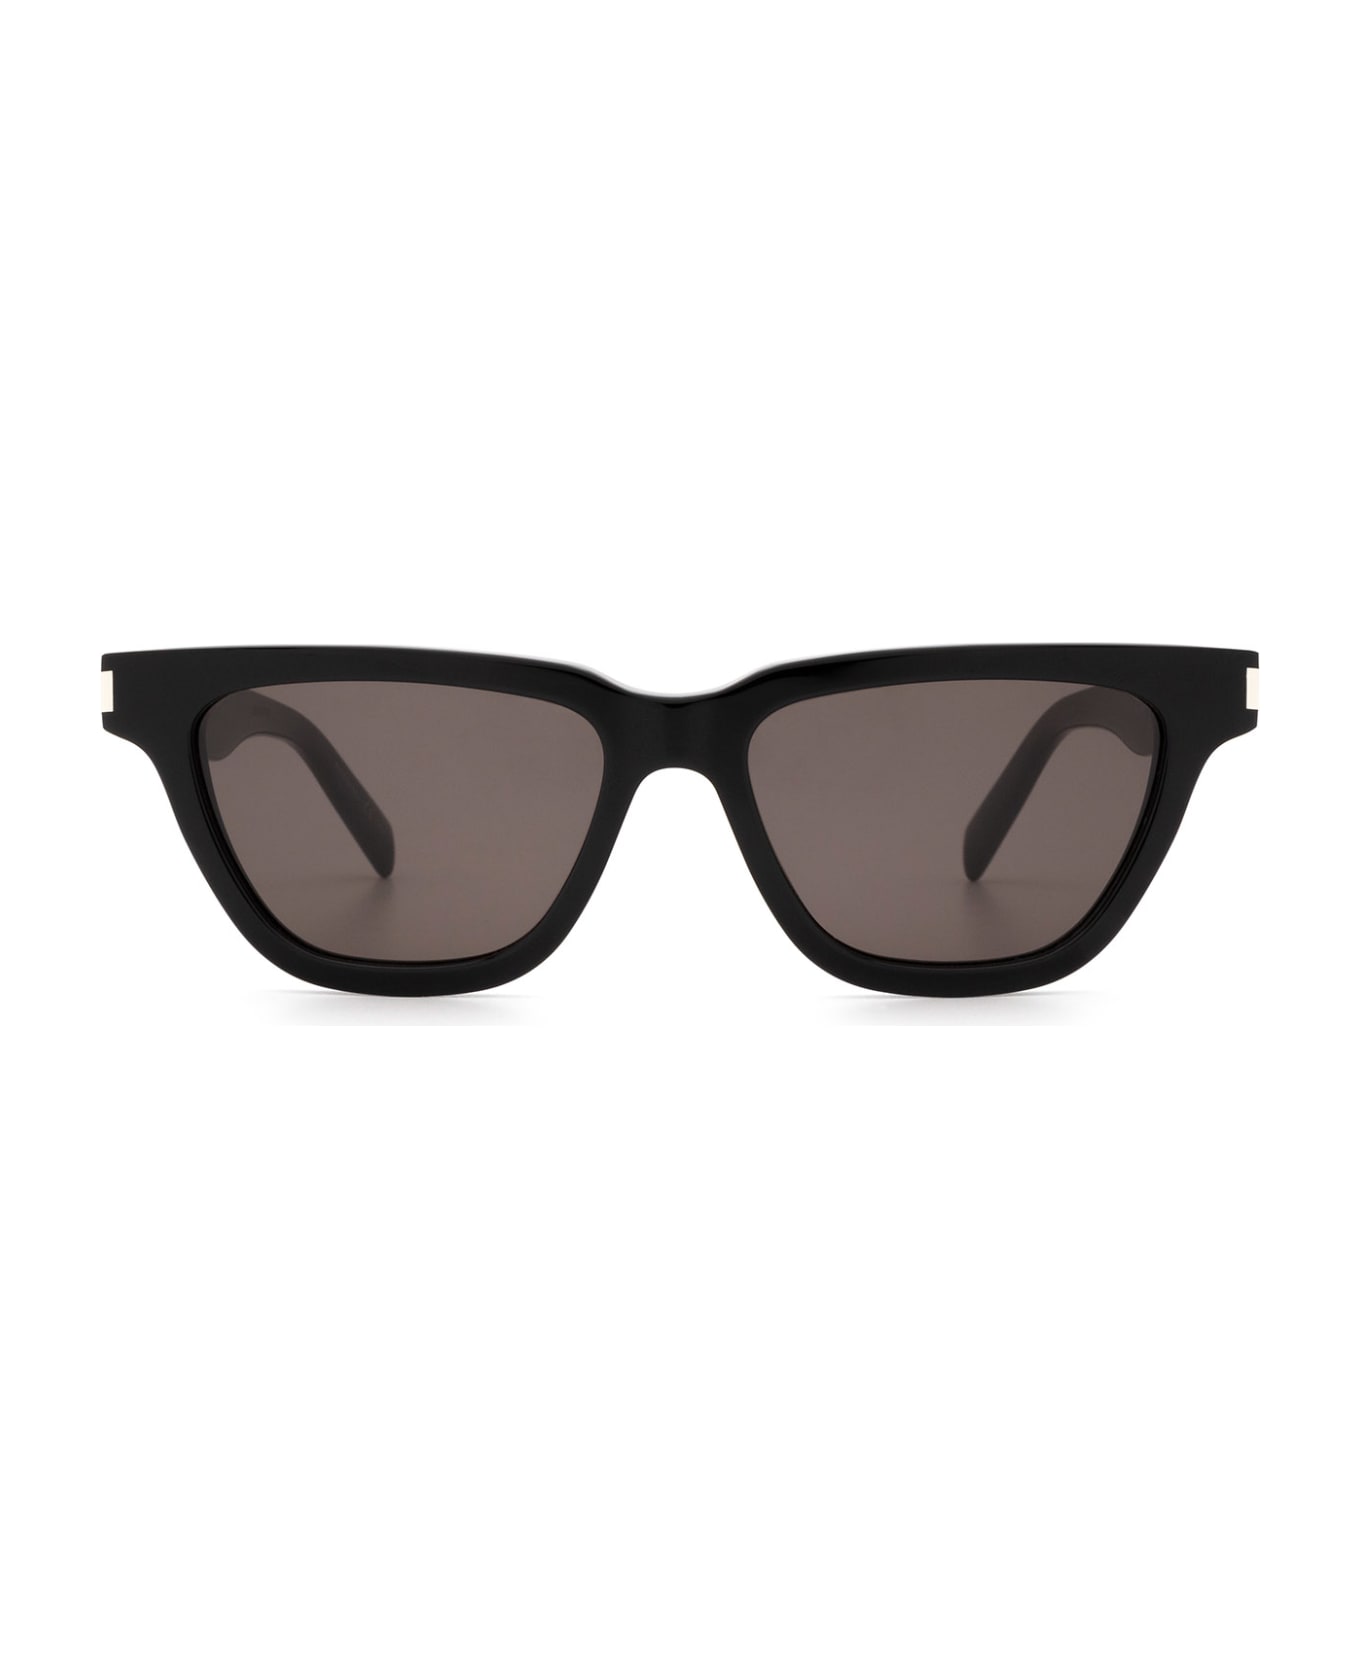 Saint Laurent Eyewear Sl 462 Black Sunglasses - Black